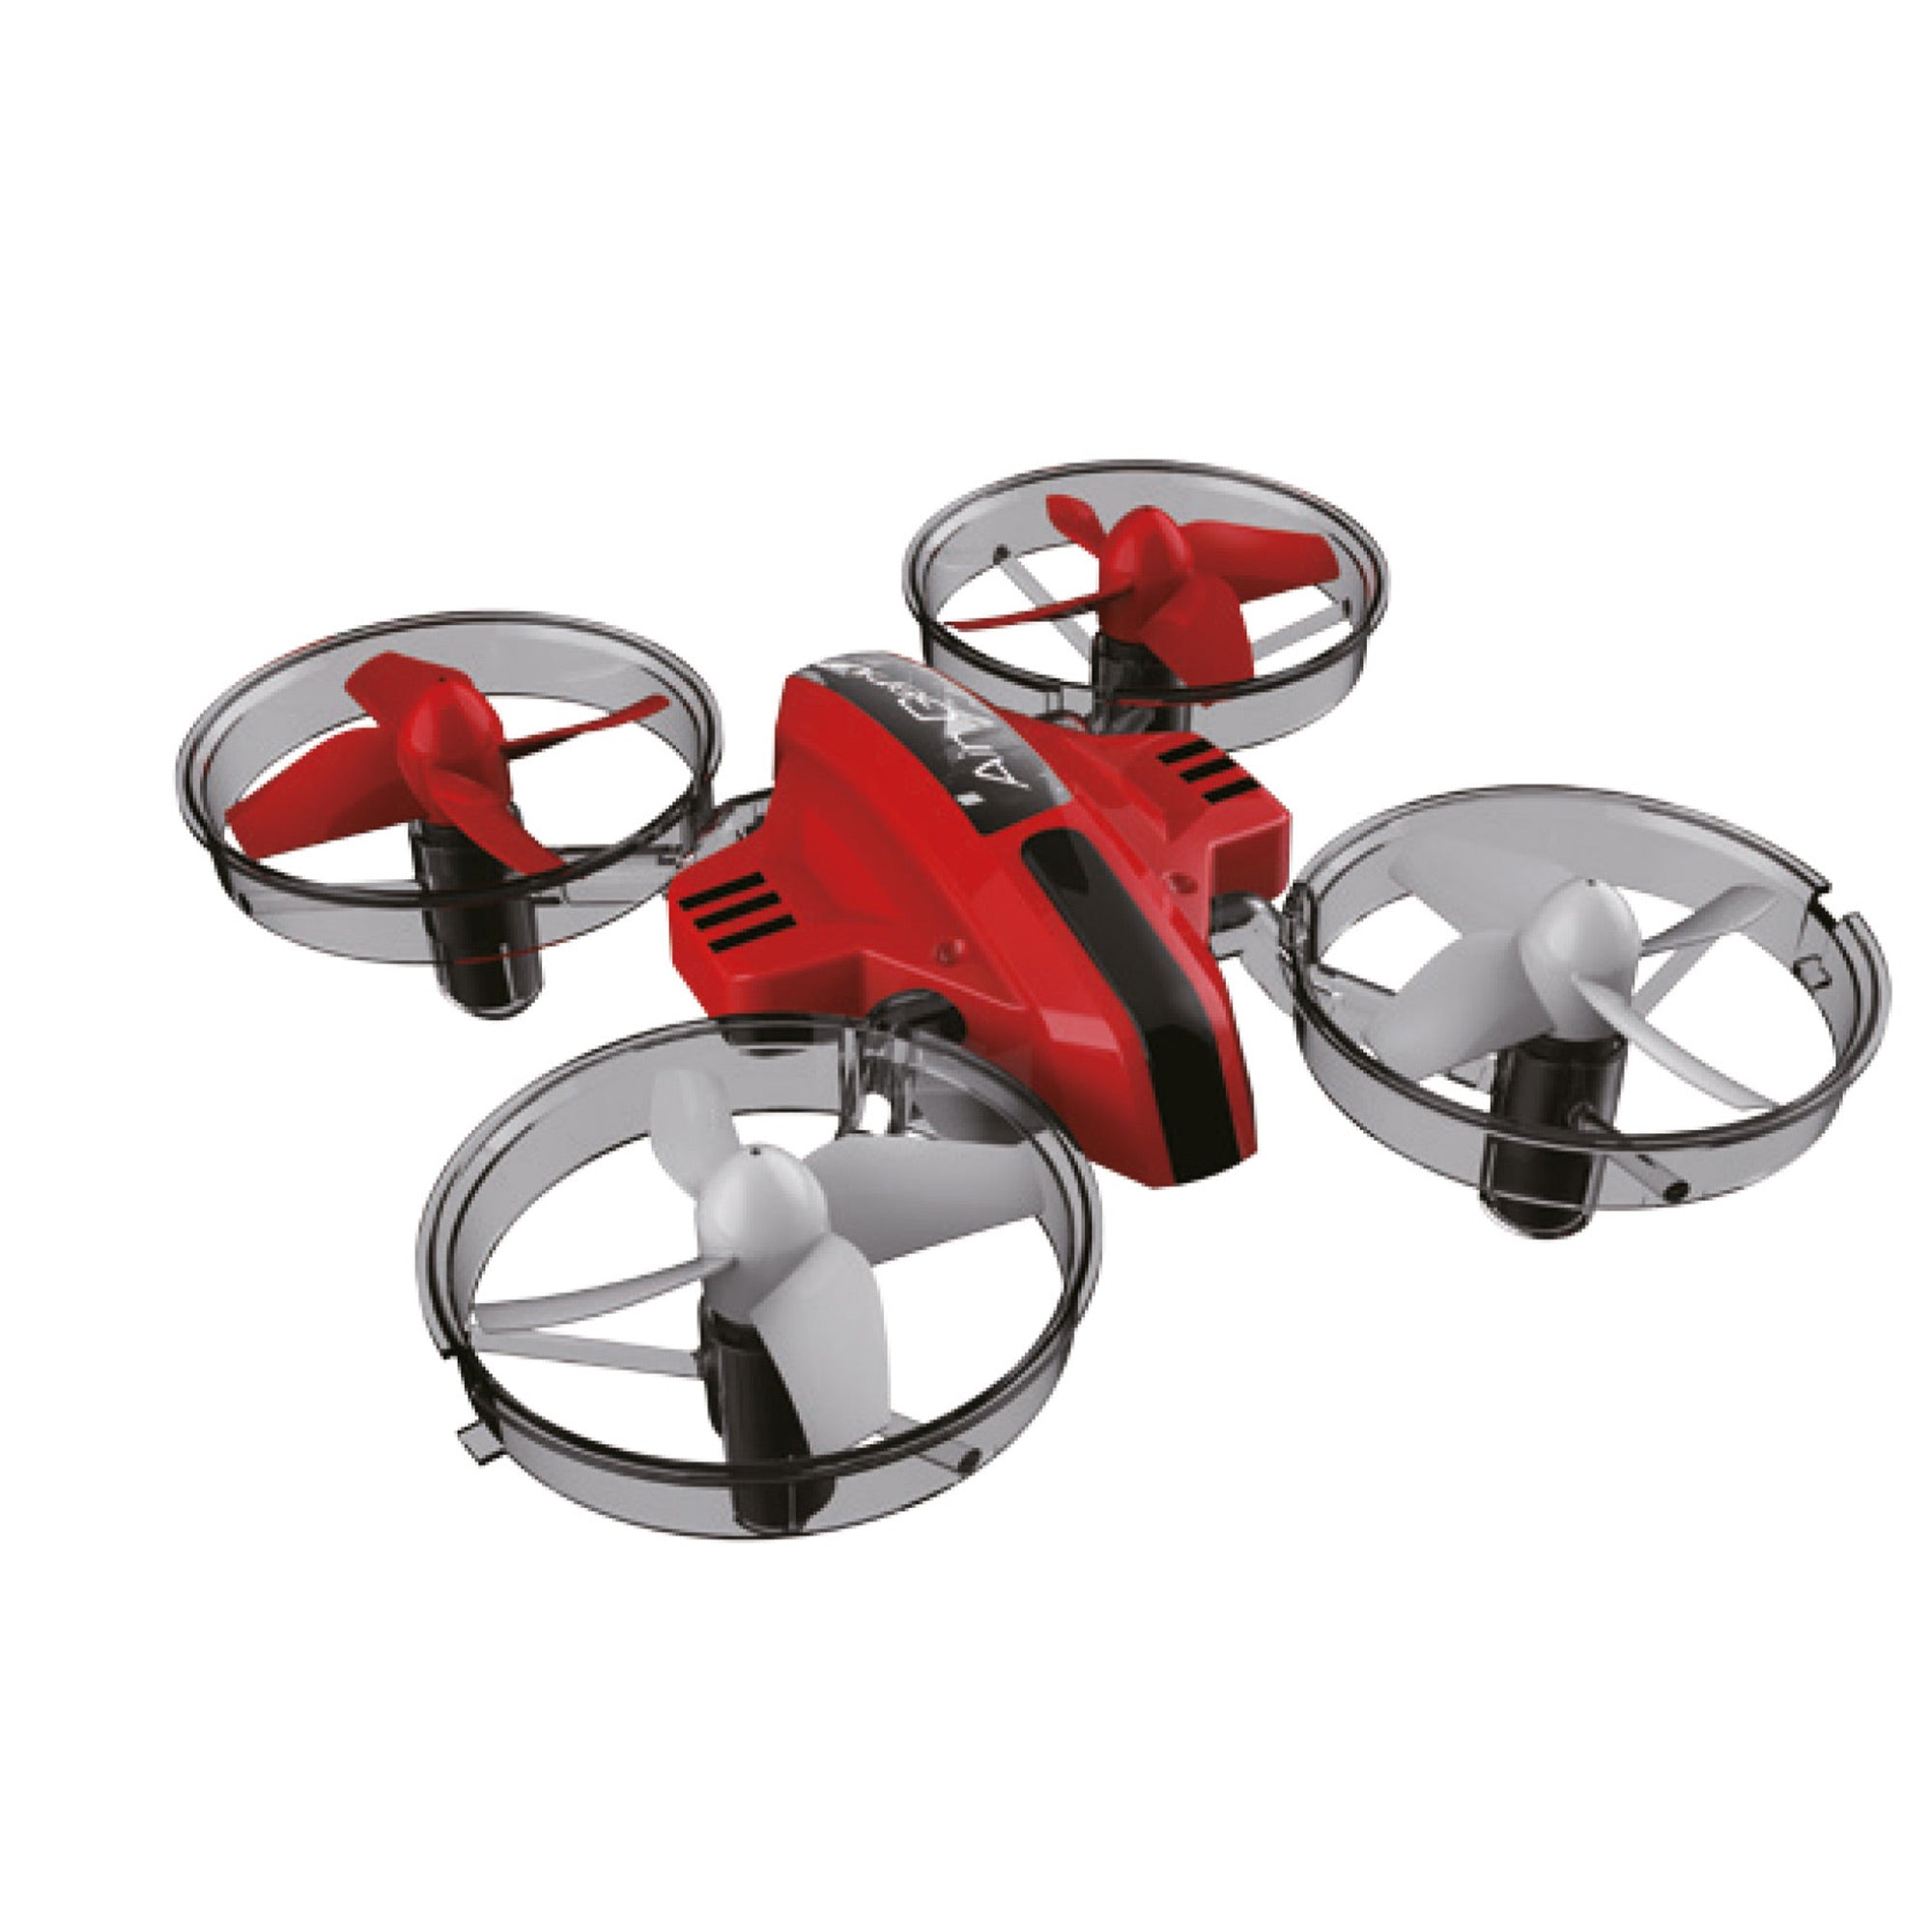 Amewi Drohne Air Genius weiß rot